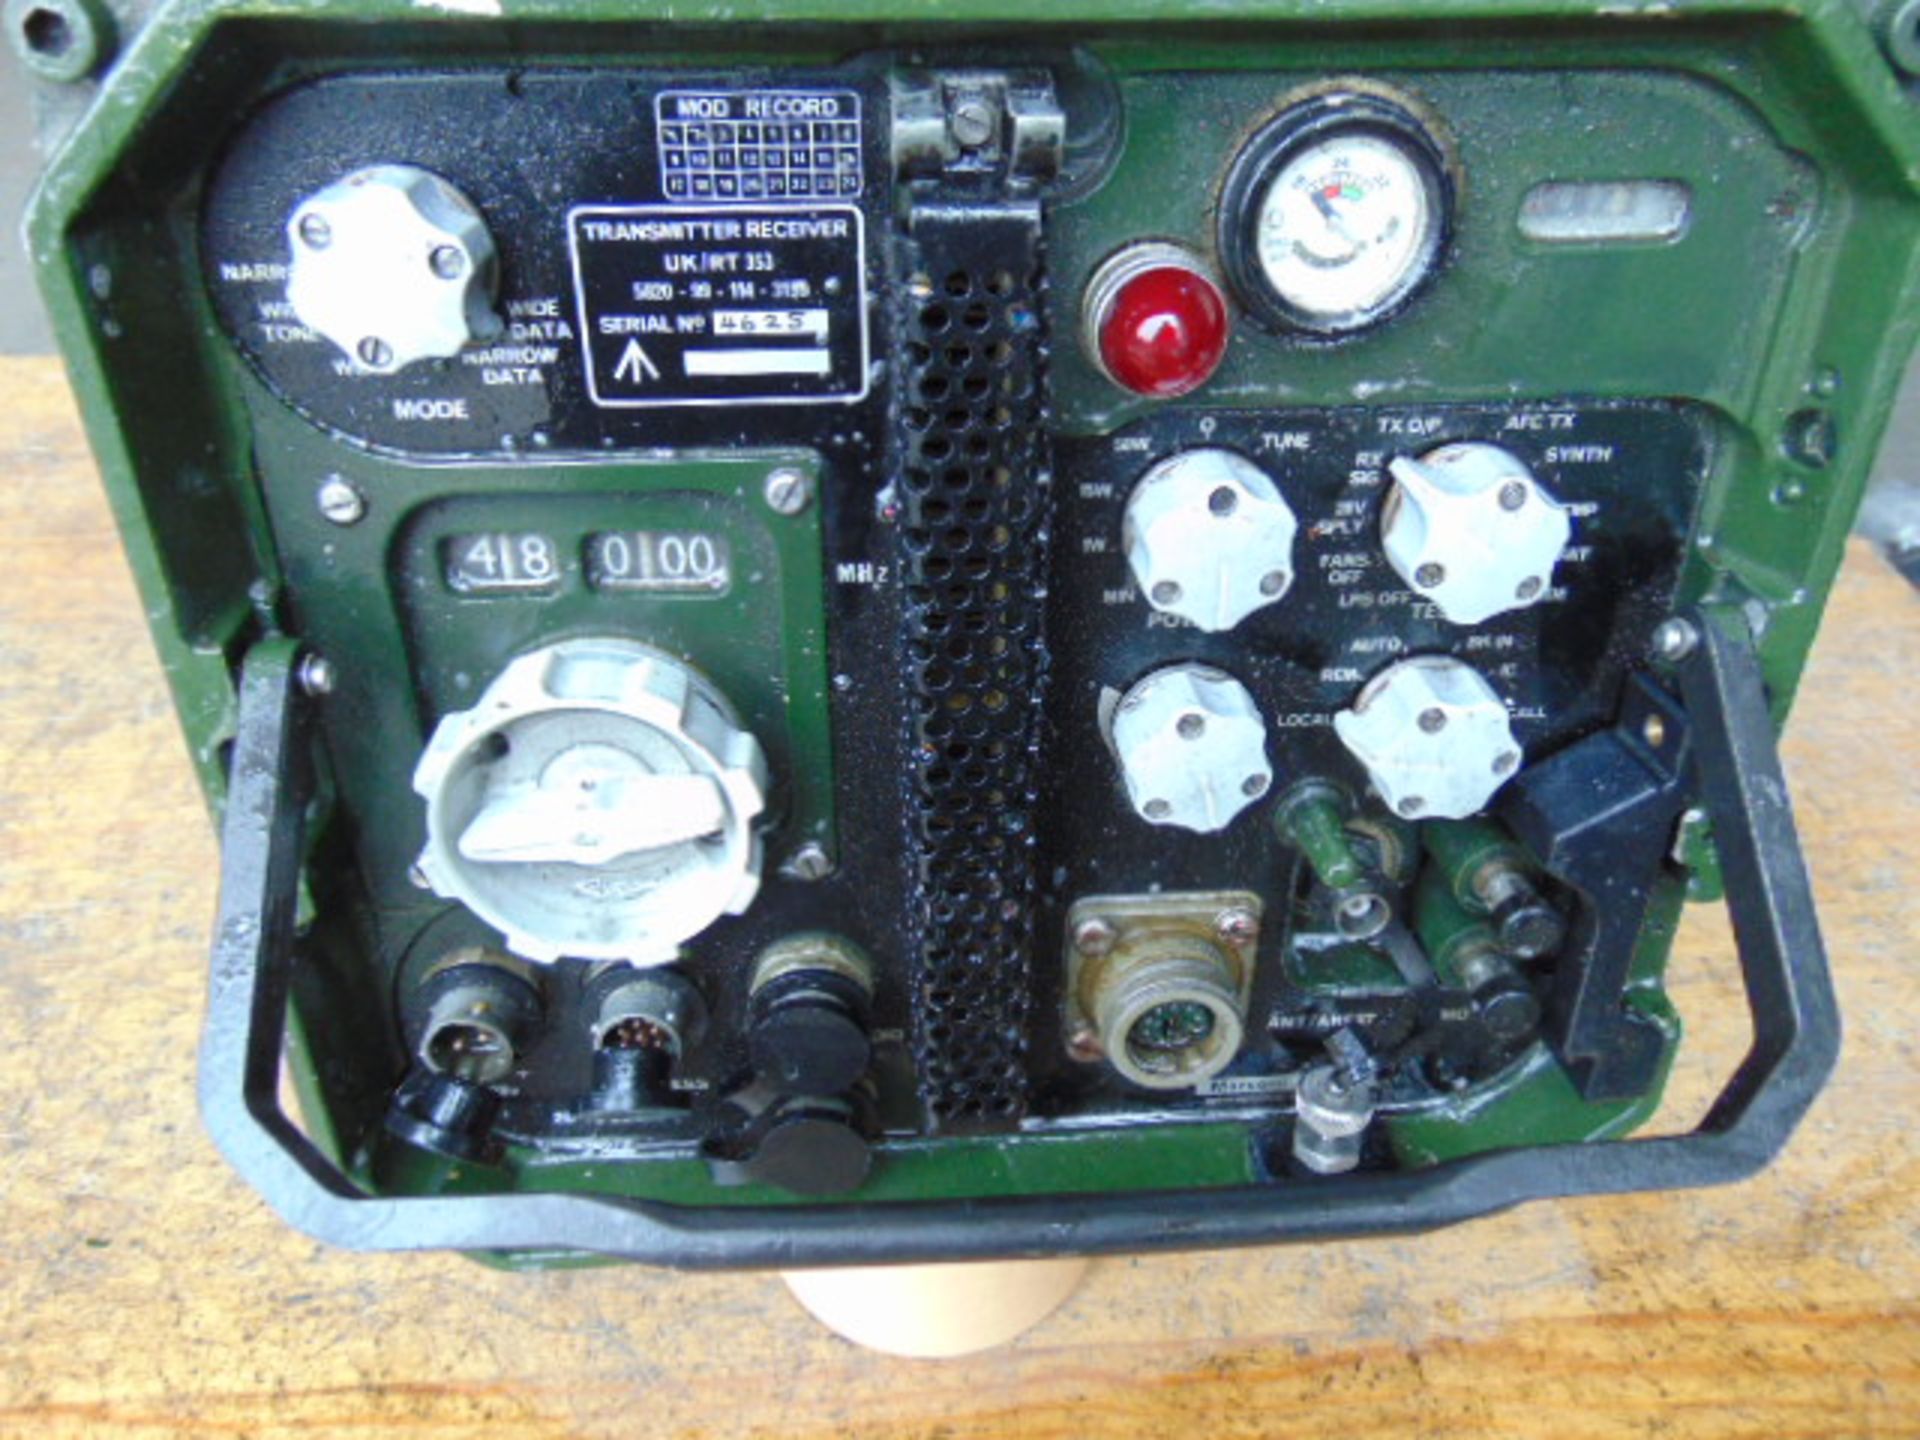 Clansman Transmitter Receiver UK/RT 353 - Bild 2 aus 6